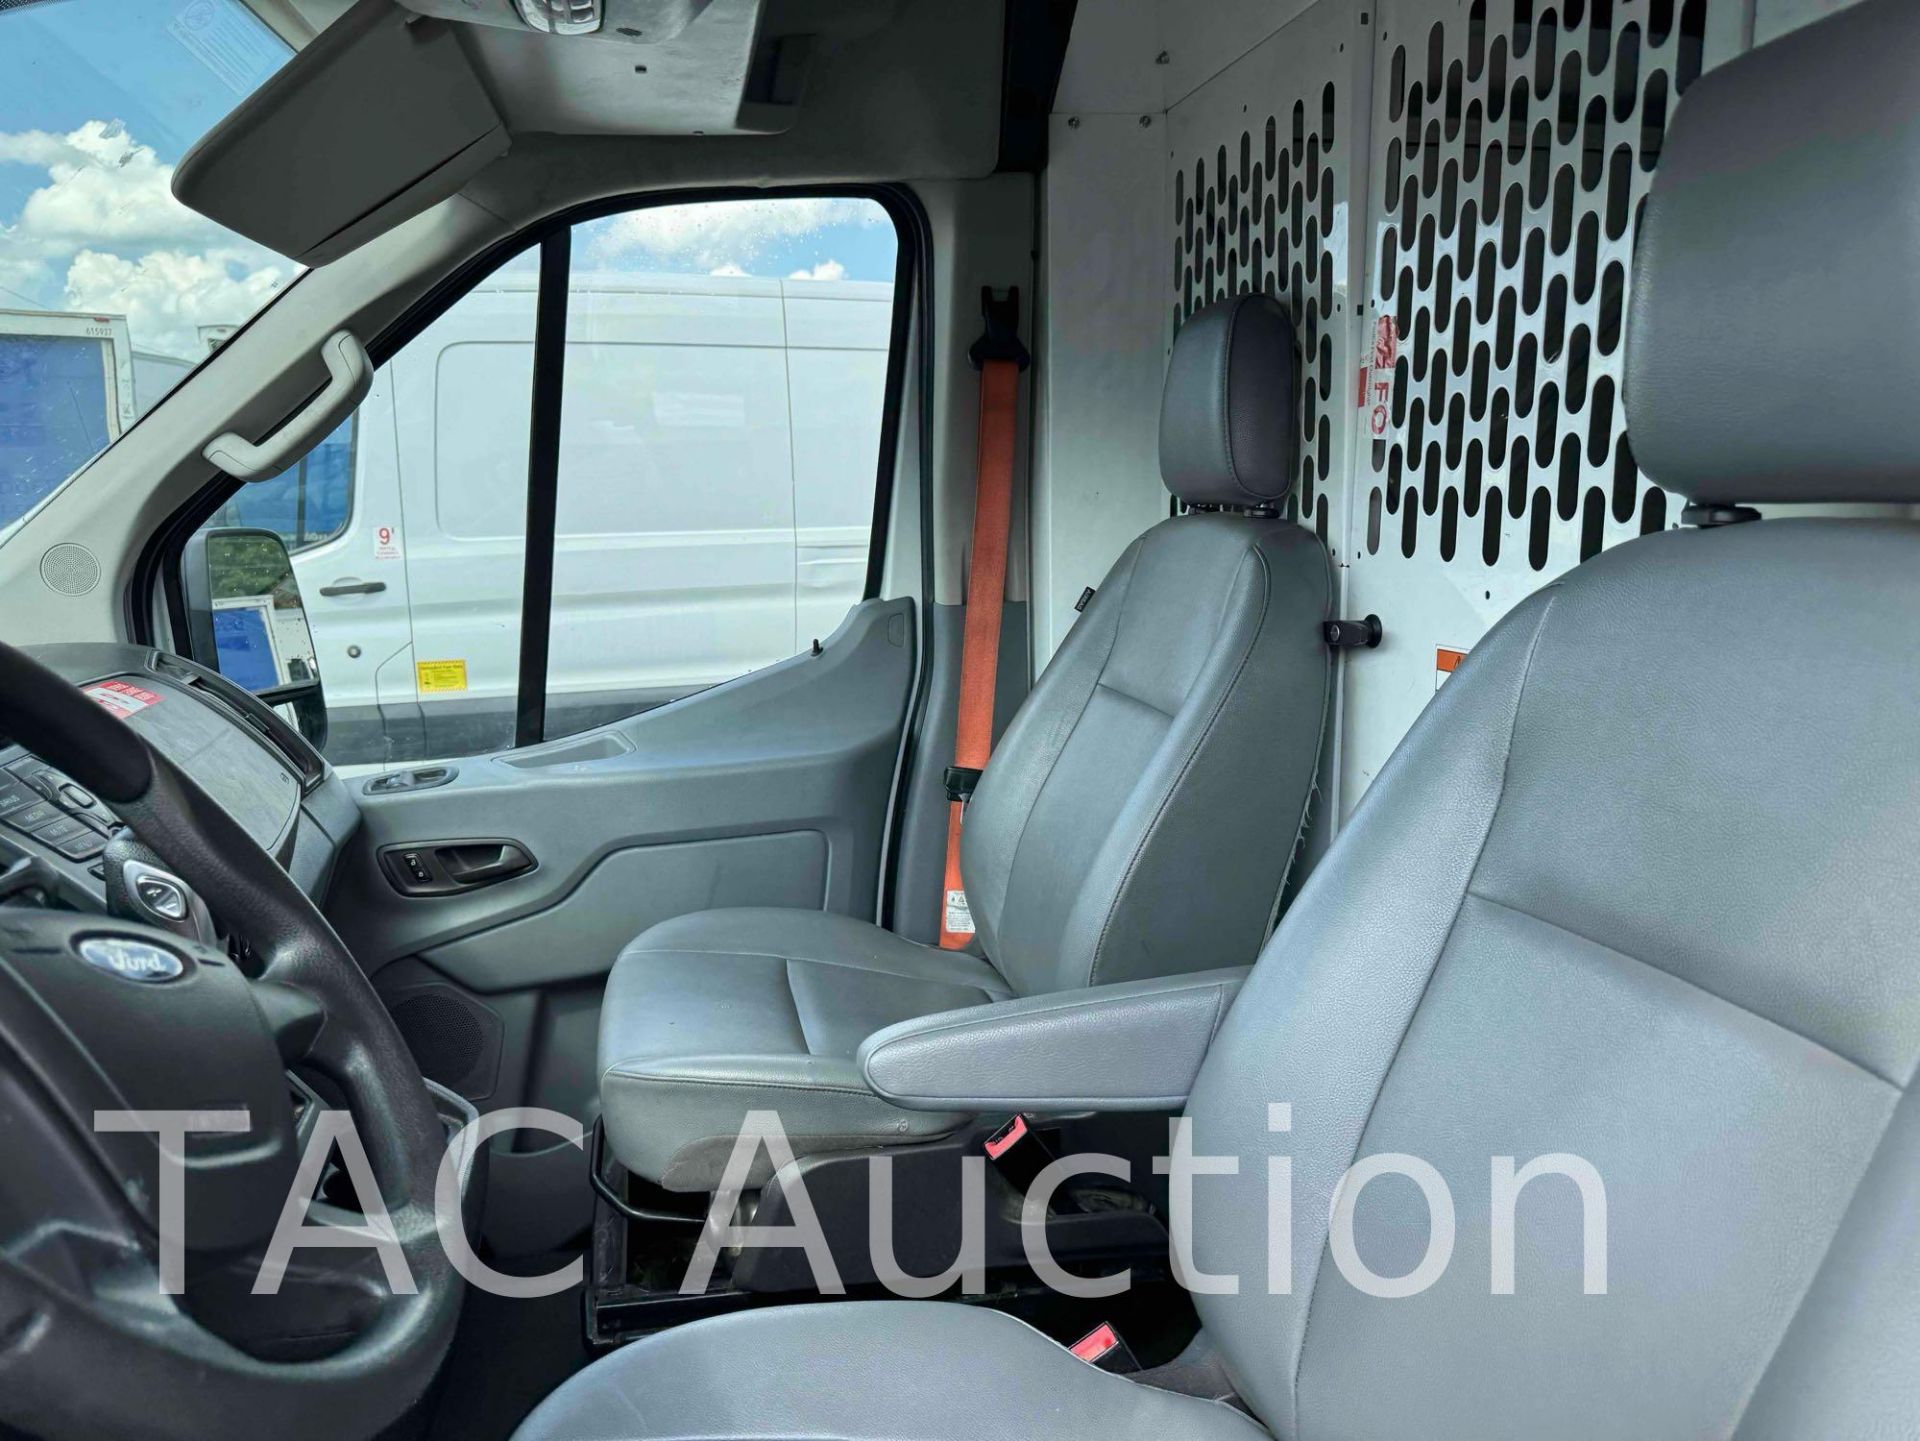 2019 Ford Transit 150 Cargo Van - Image 9 of 43